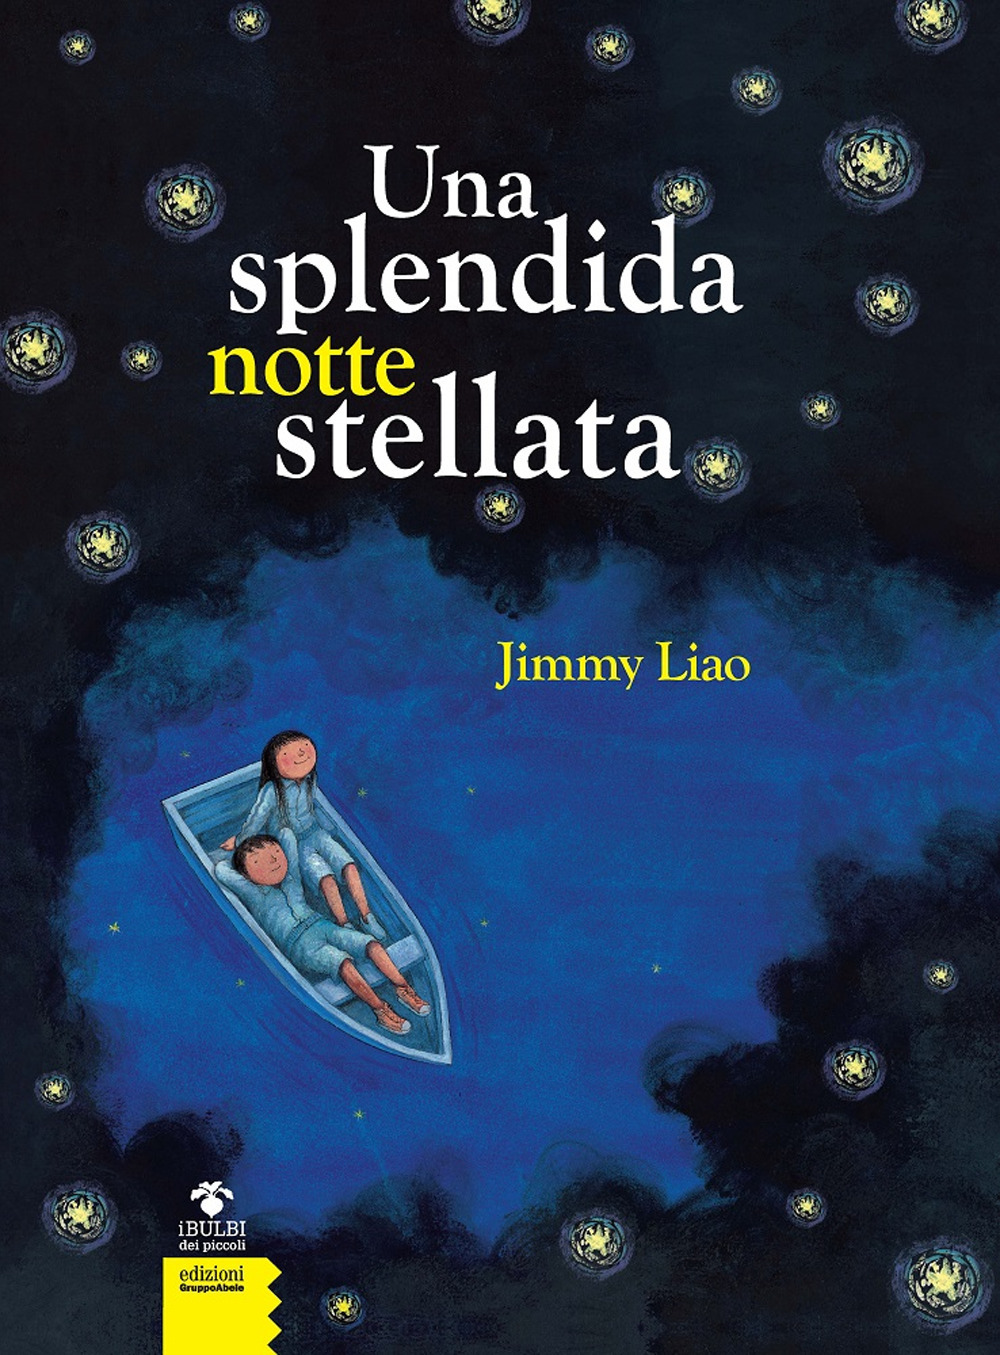 Libri Jimmy Liao - Una Splendida Notte Stellata. Nuova Ediz. NUOVO SIGILLATO, EDIZIONE DEL 06/11/2019 SUBITO DISPONIBILE